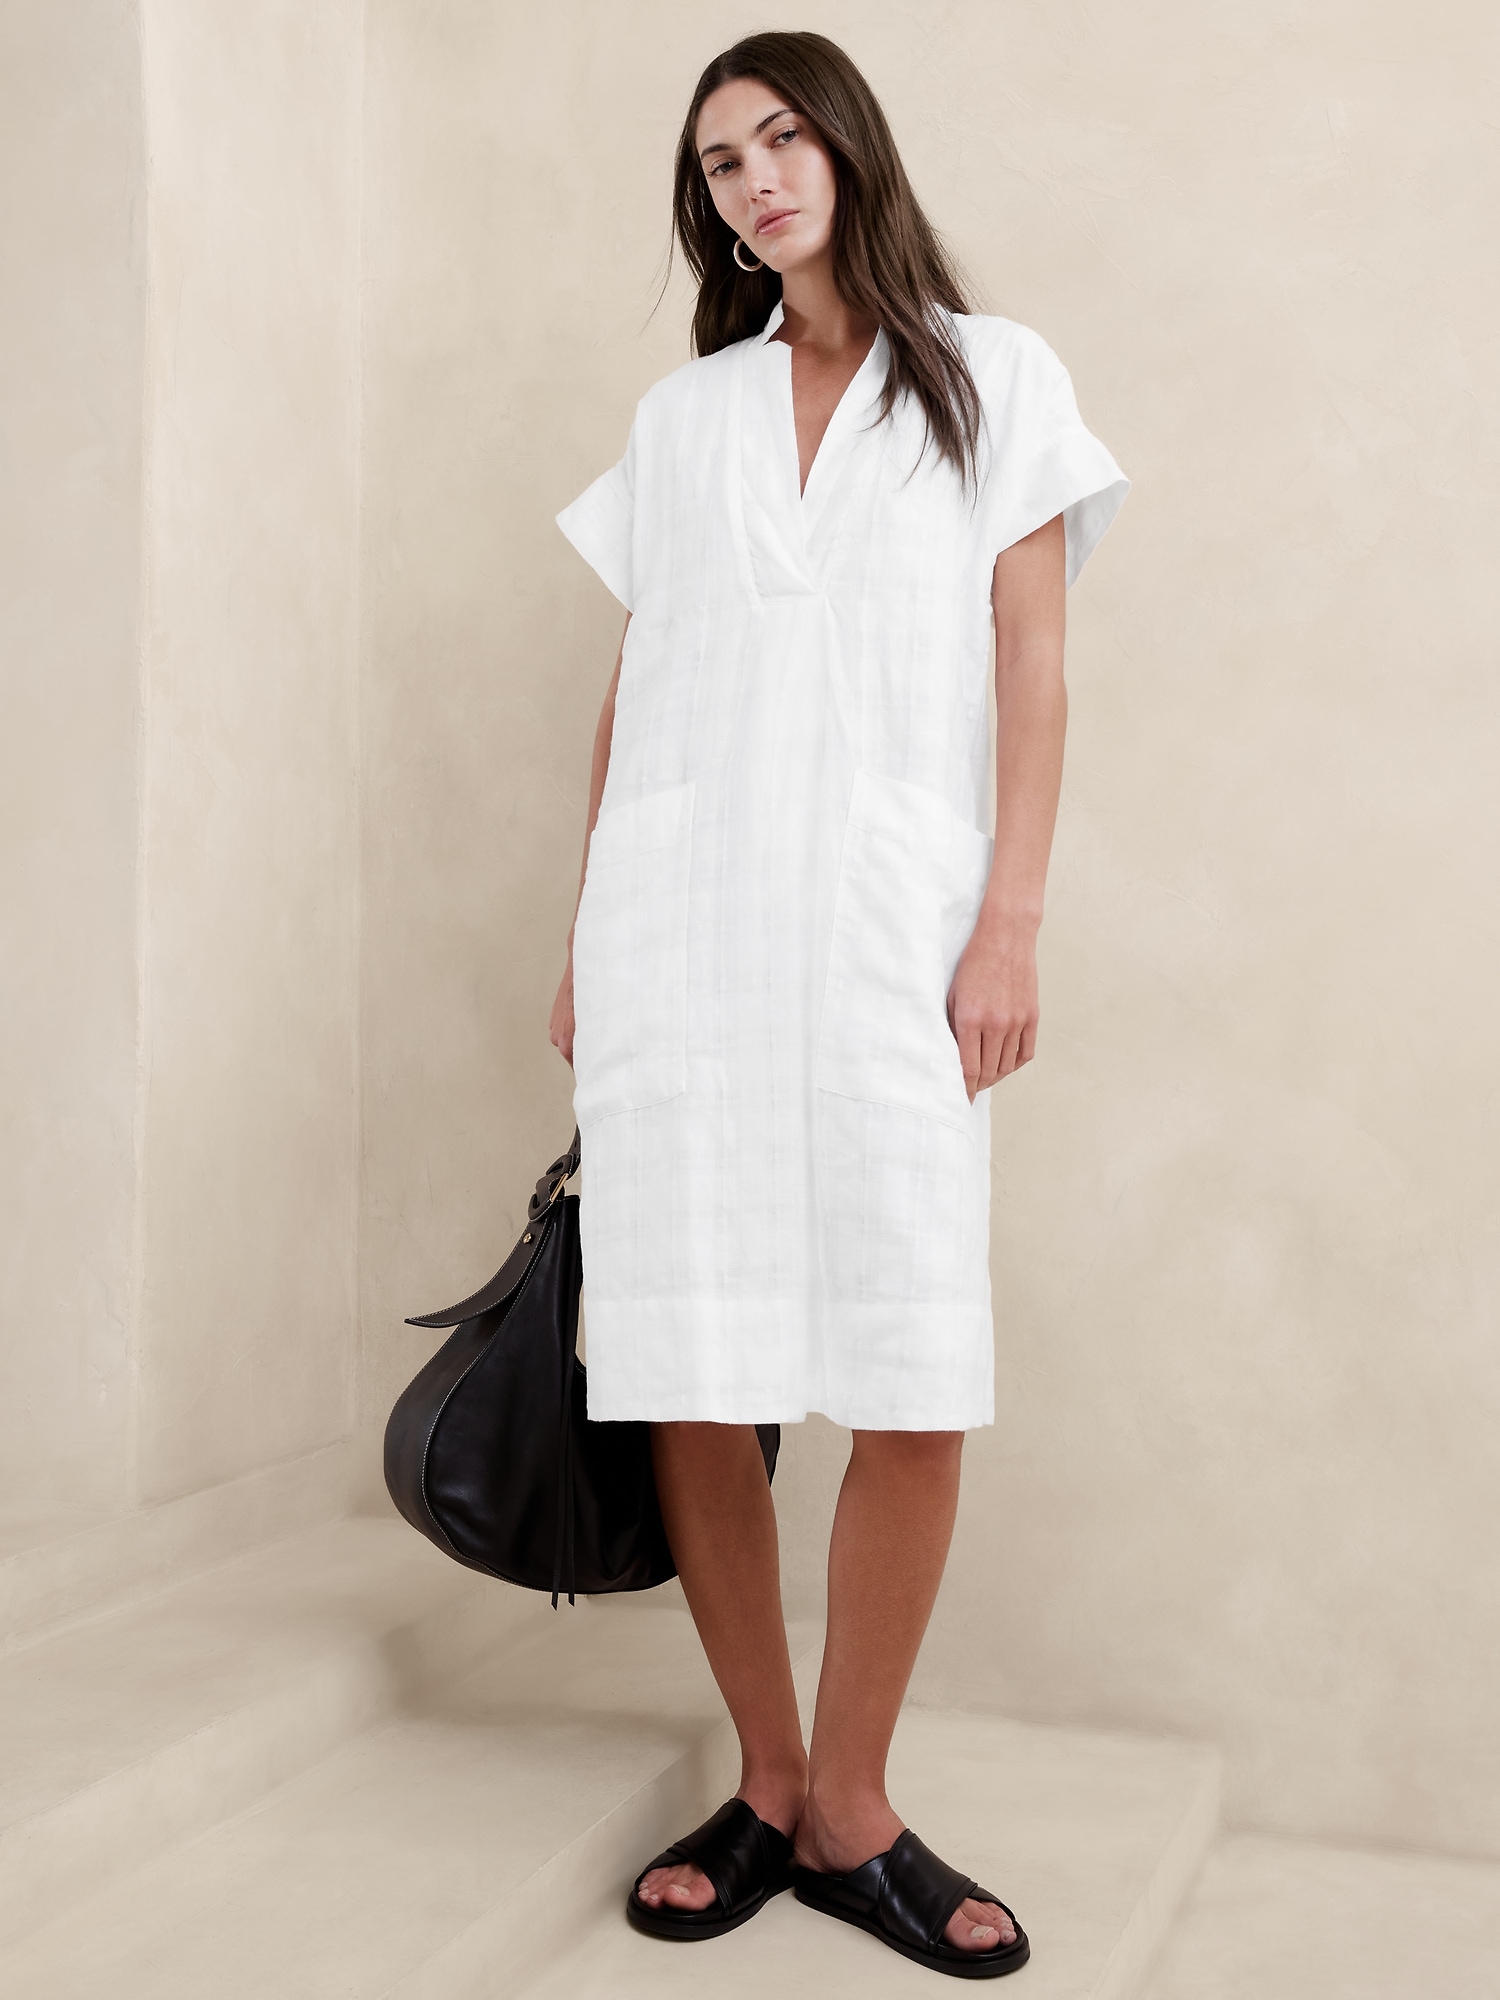 Petite Linen-Cotton Wrap Dress